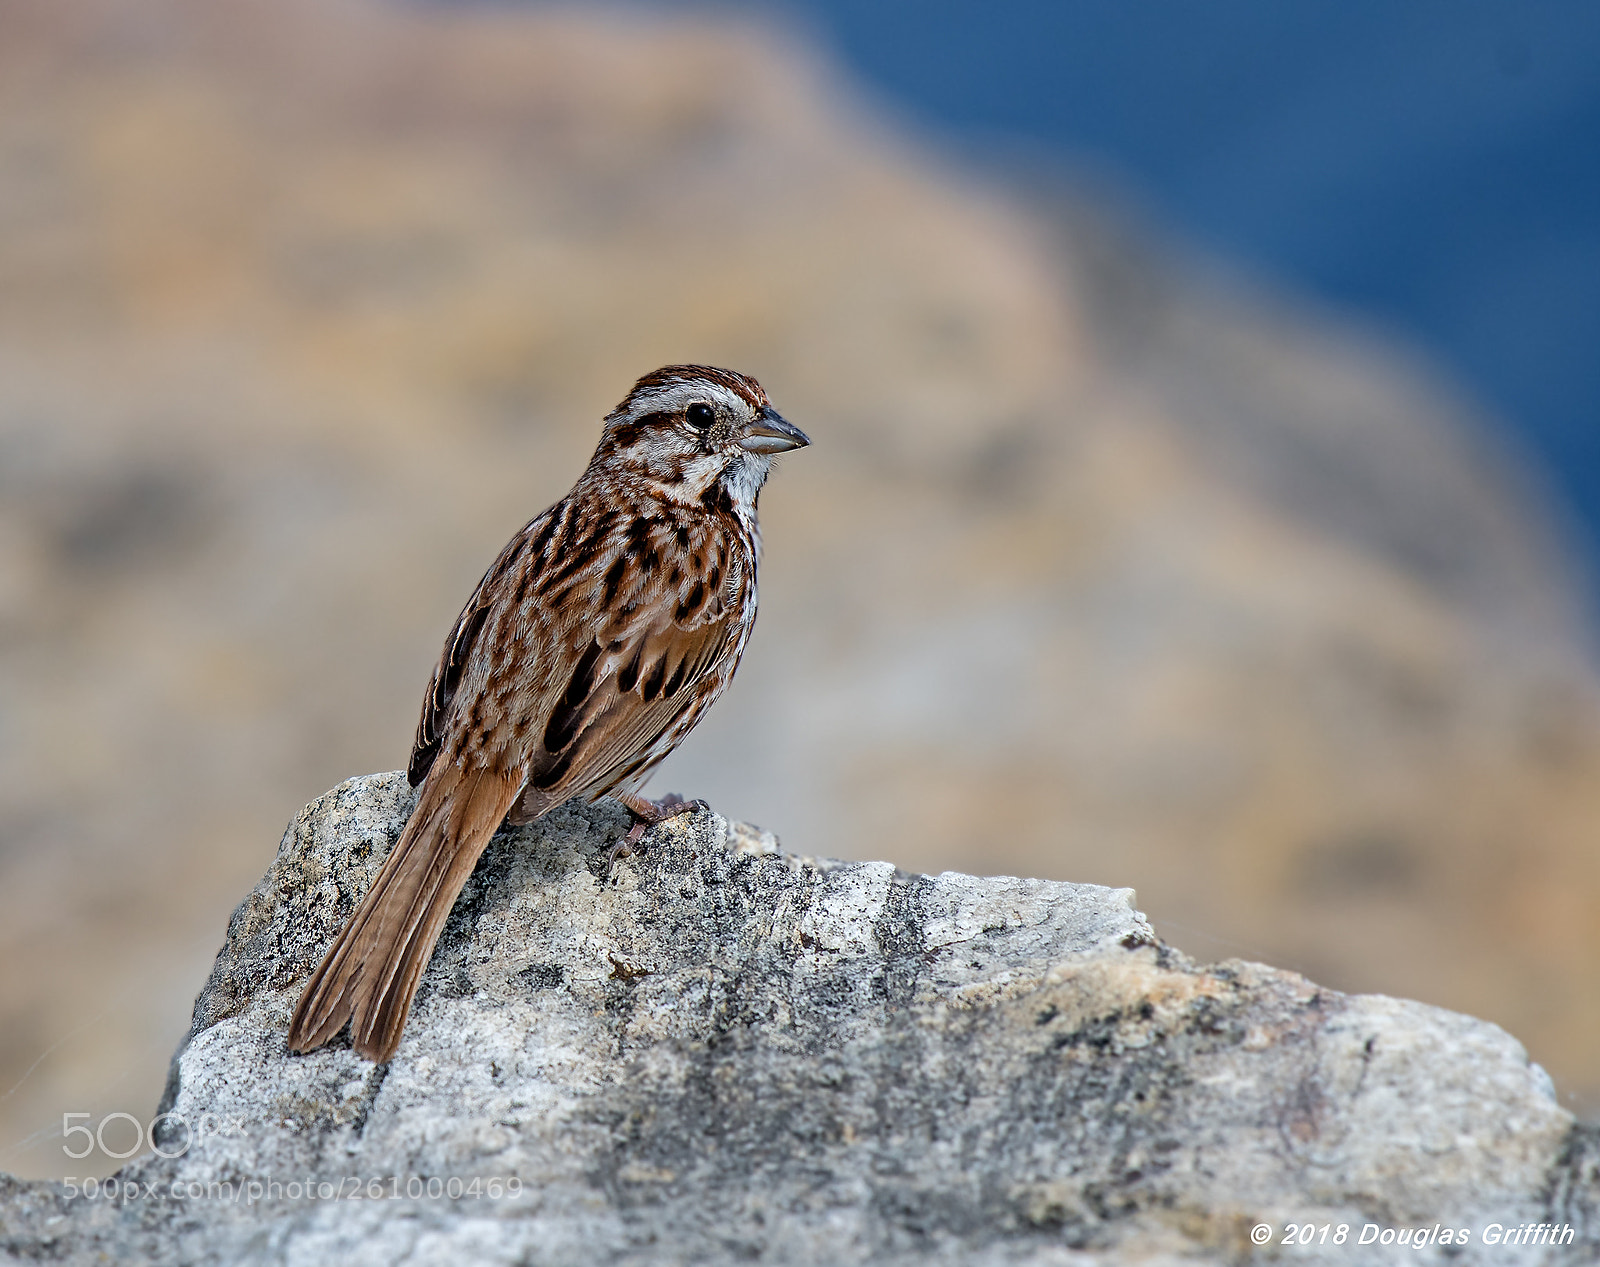 Nikon D500 sample photo. Song sparrow (melospiza melodia) photography